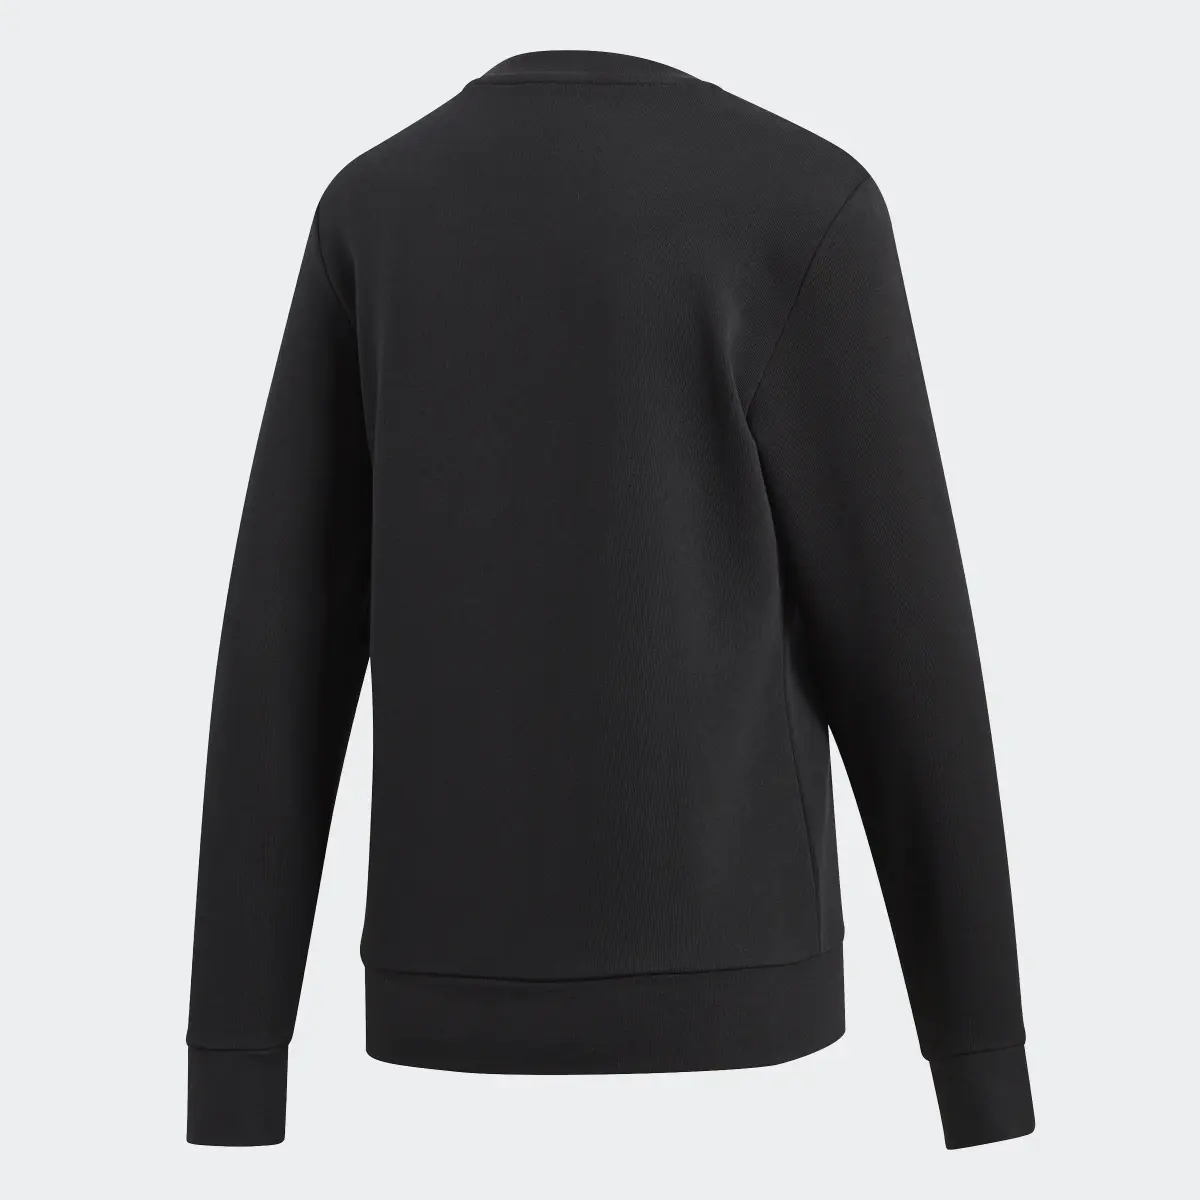 Adidas Essentials Linear Sweatshirt. 2